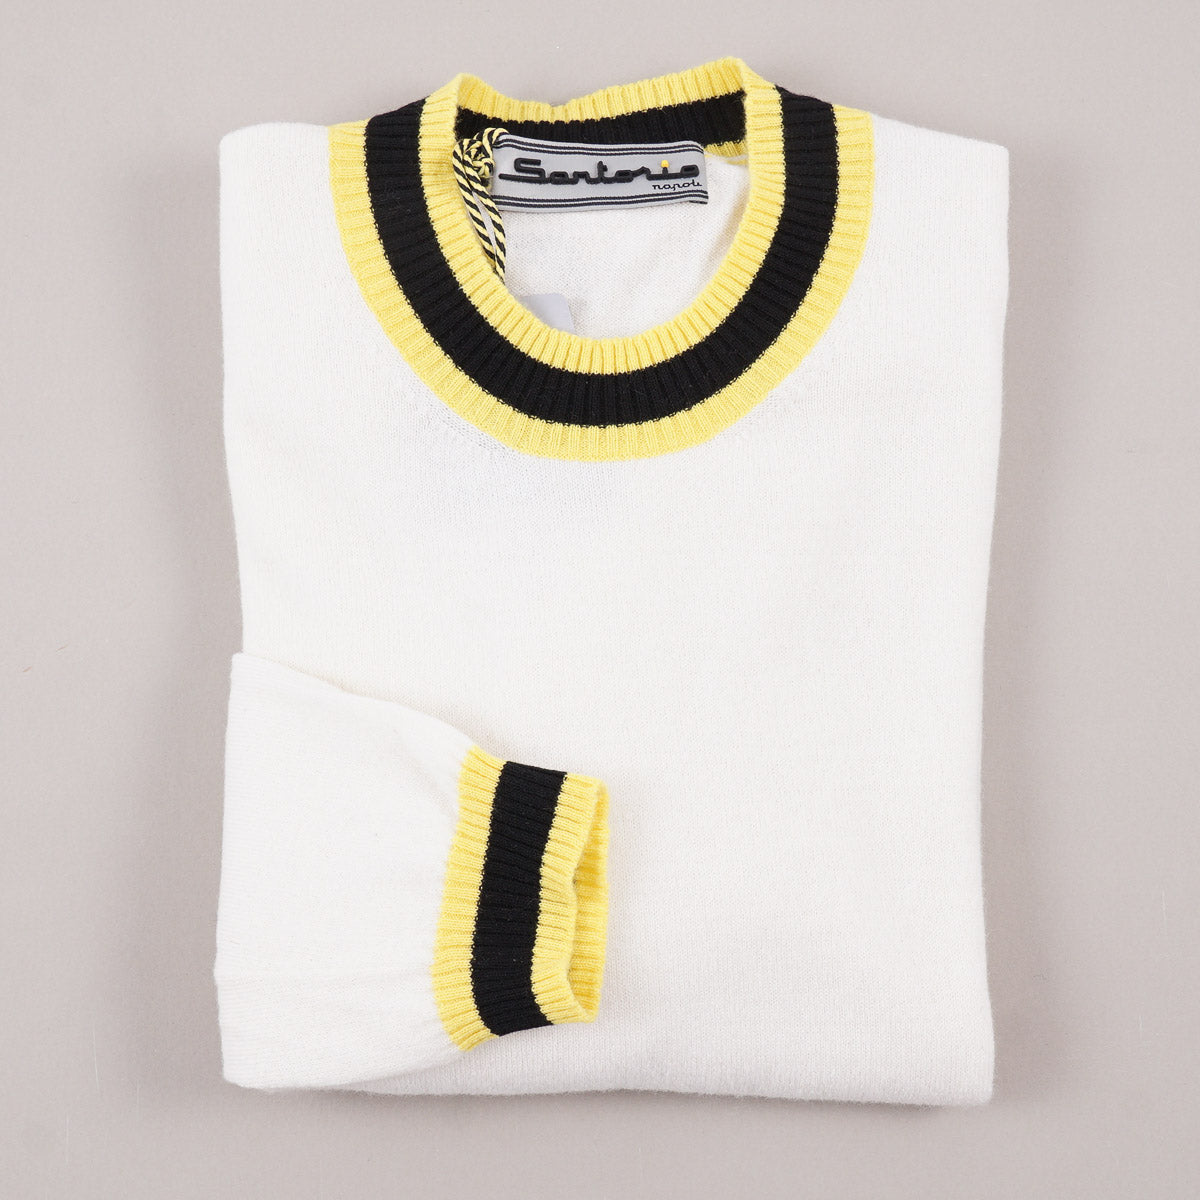 Sartorio Cashmere Sweater with Contrast Details - Top Shelf Apparel